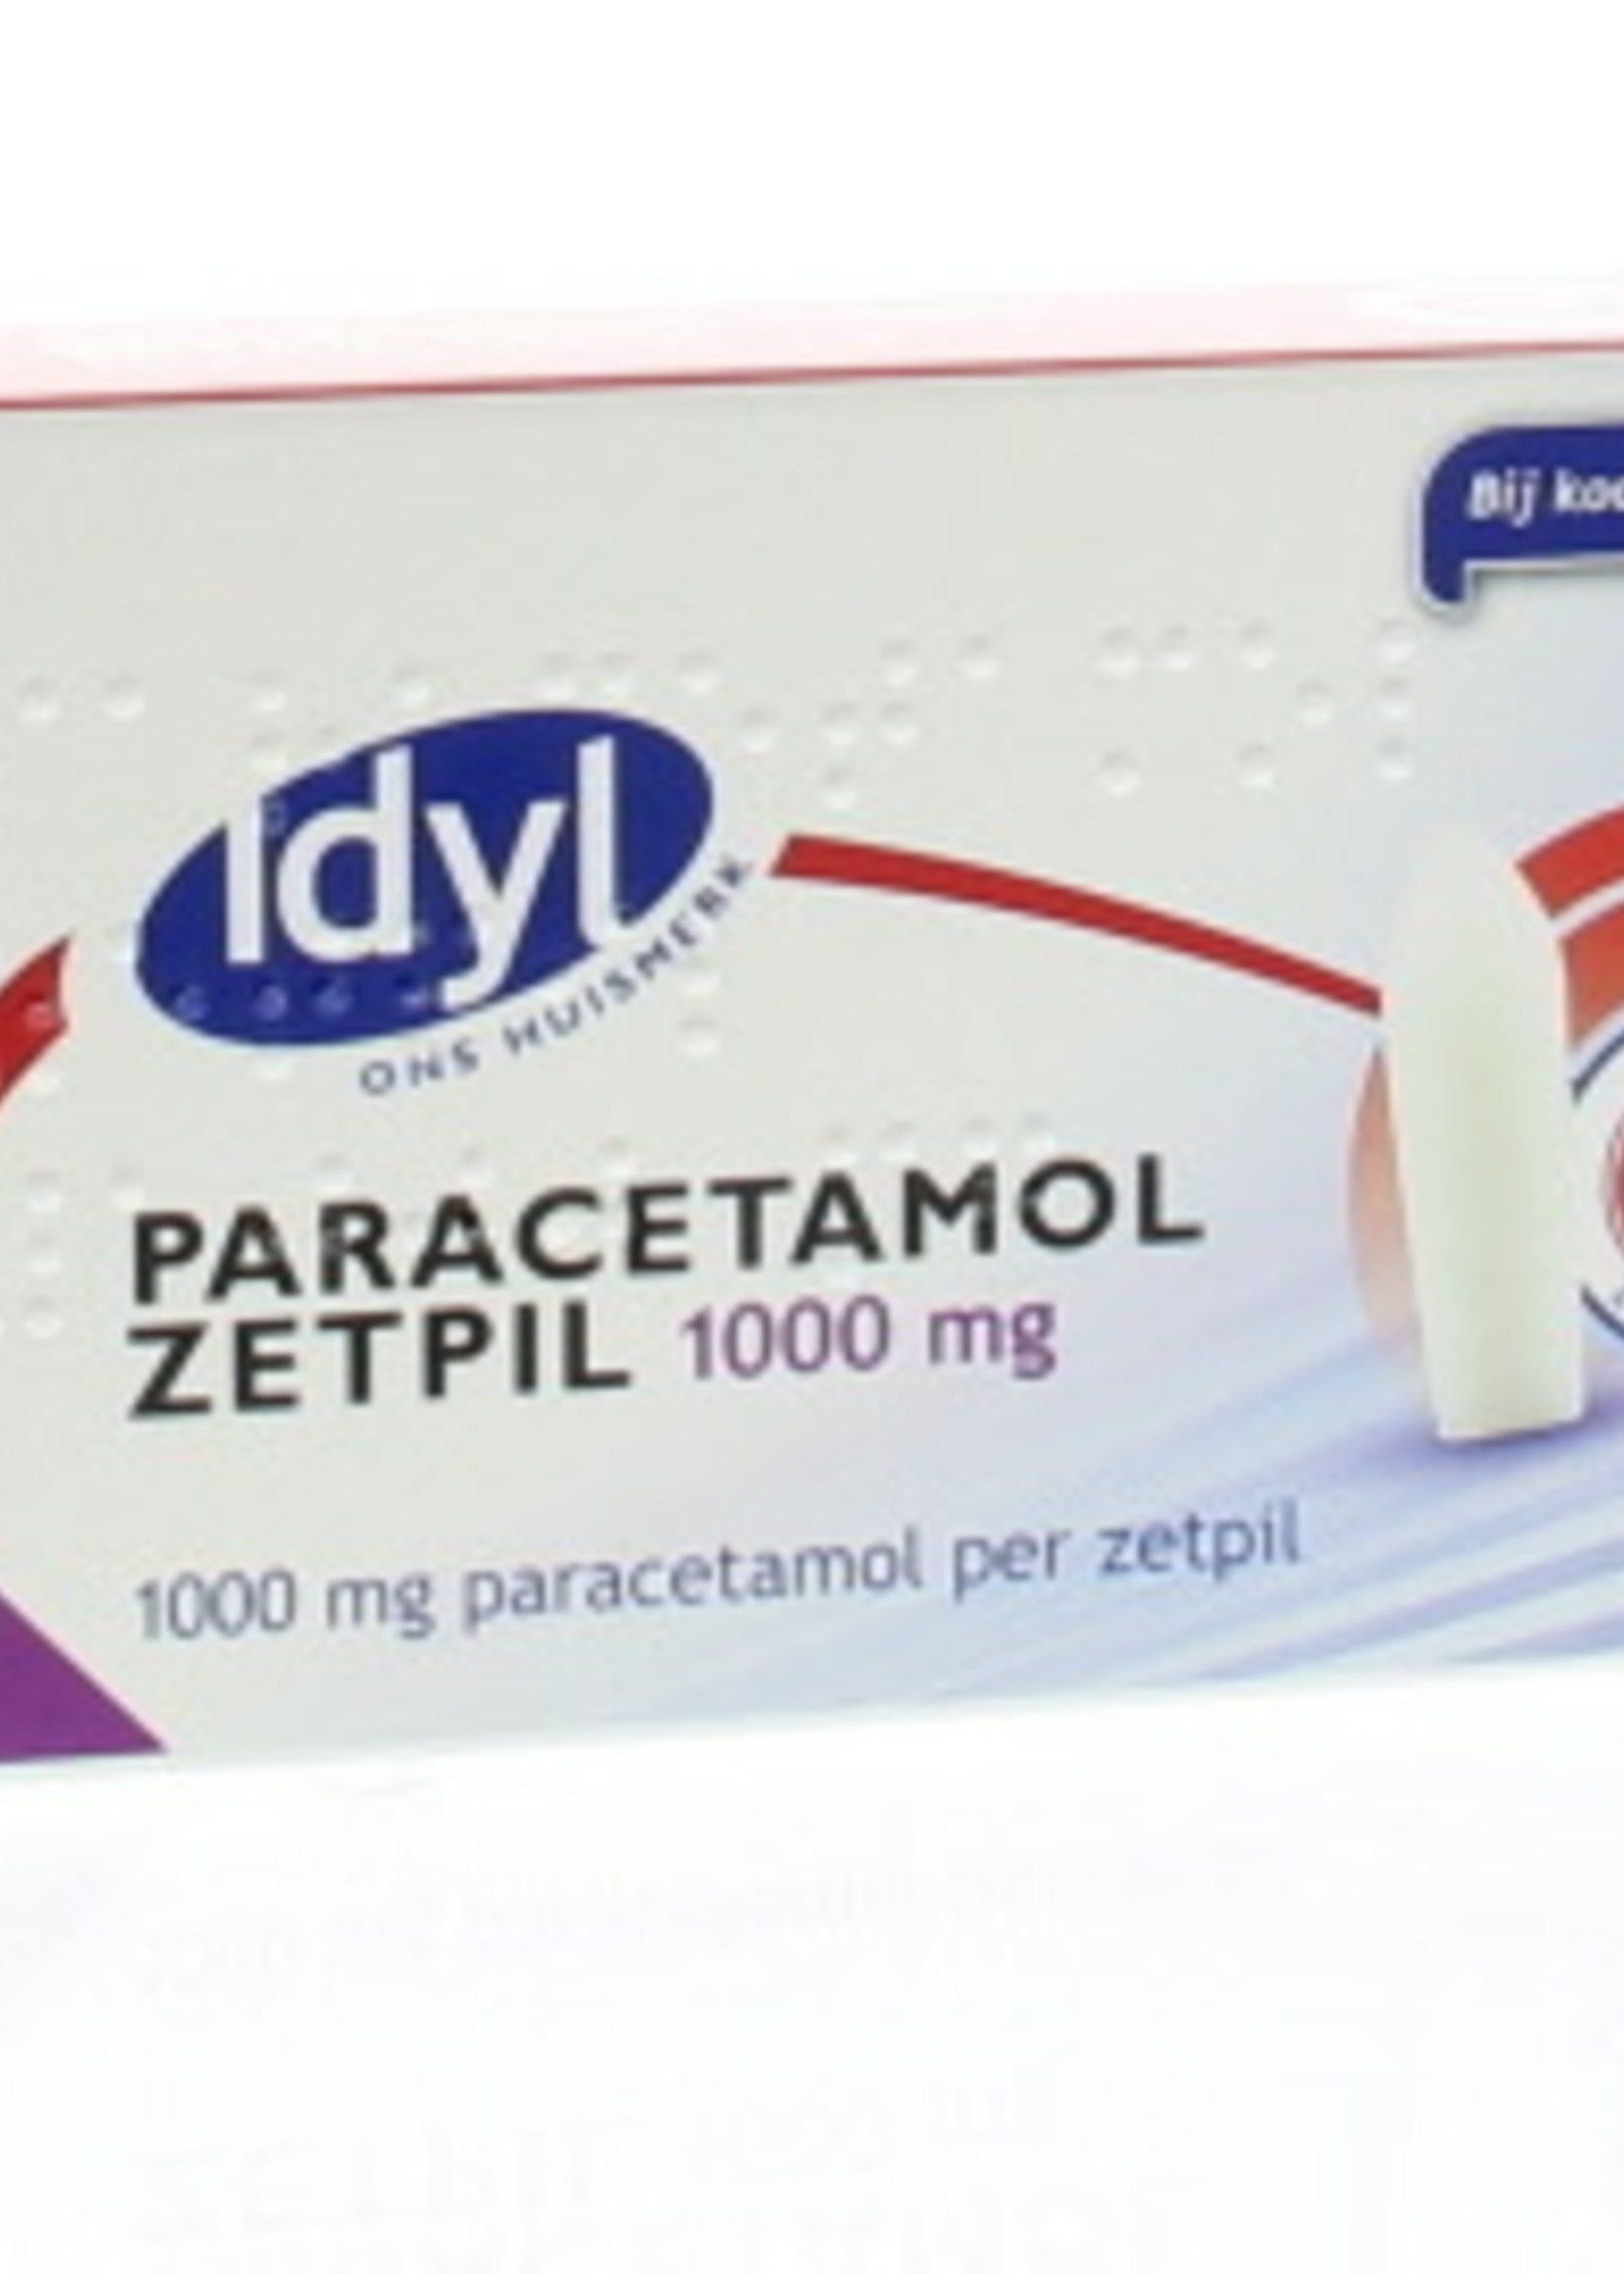 IDYL Paracetamol zetpil 1000 mg, 10 zetpillen